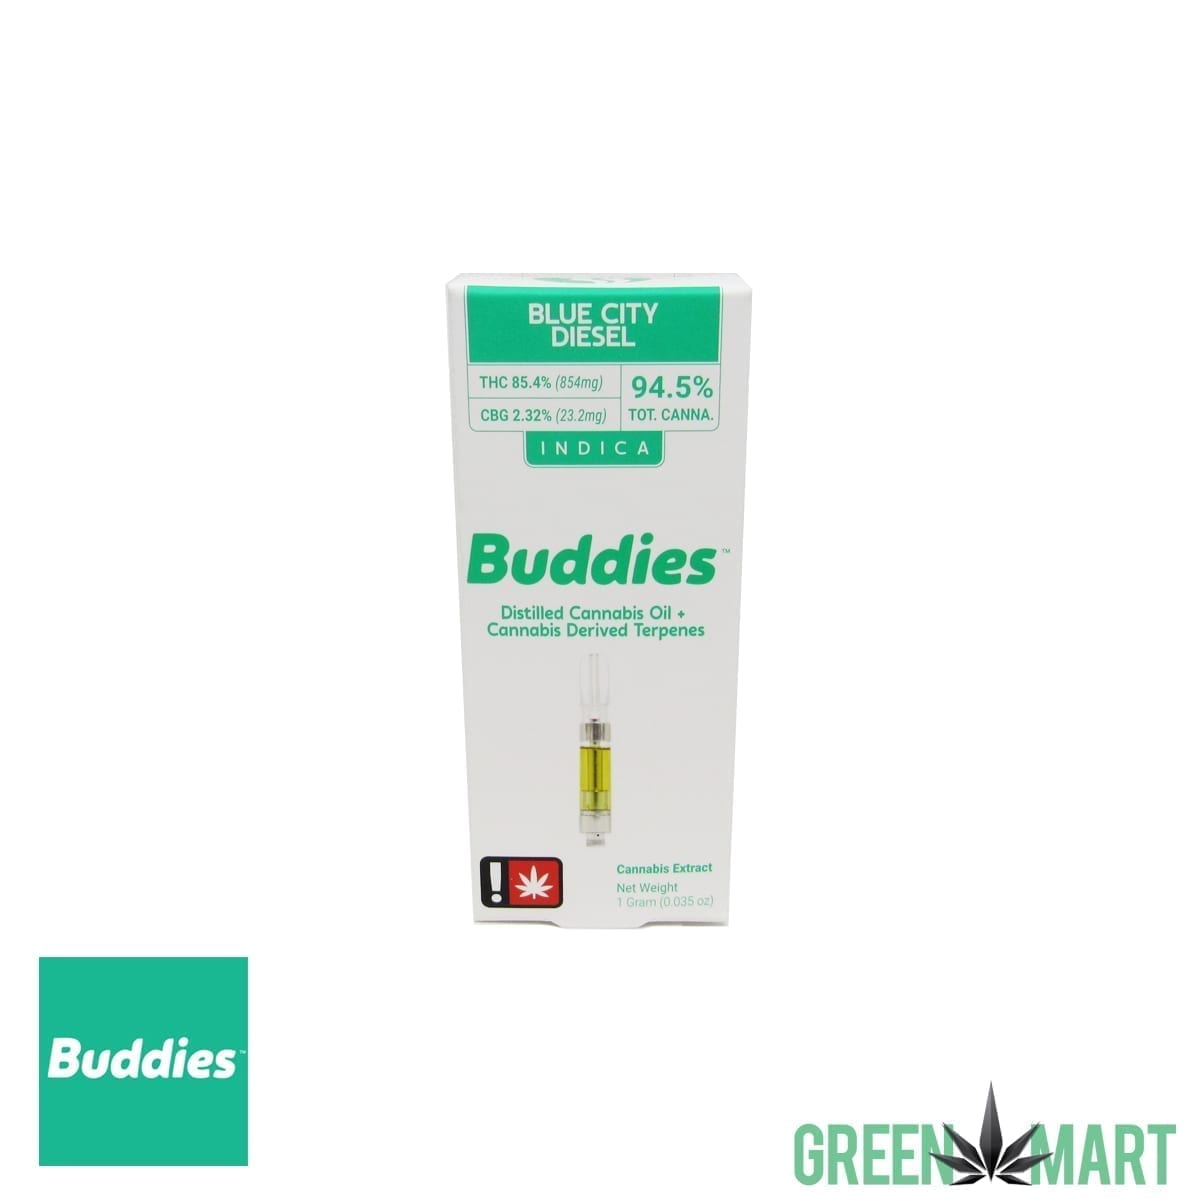 Buddies Brand Distillate Cartridge - BlueCityDiesel